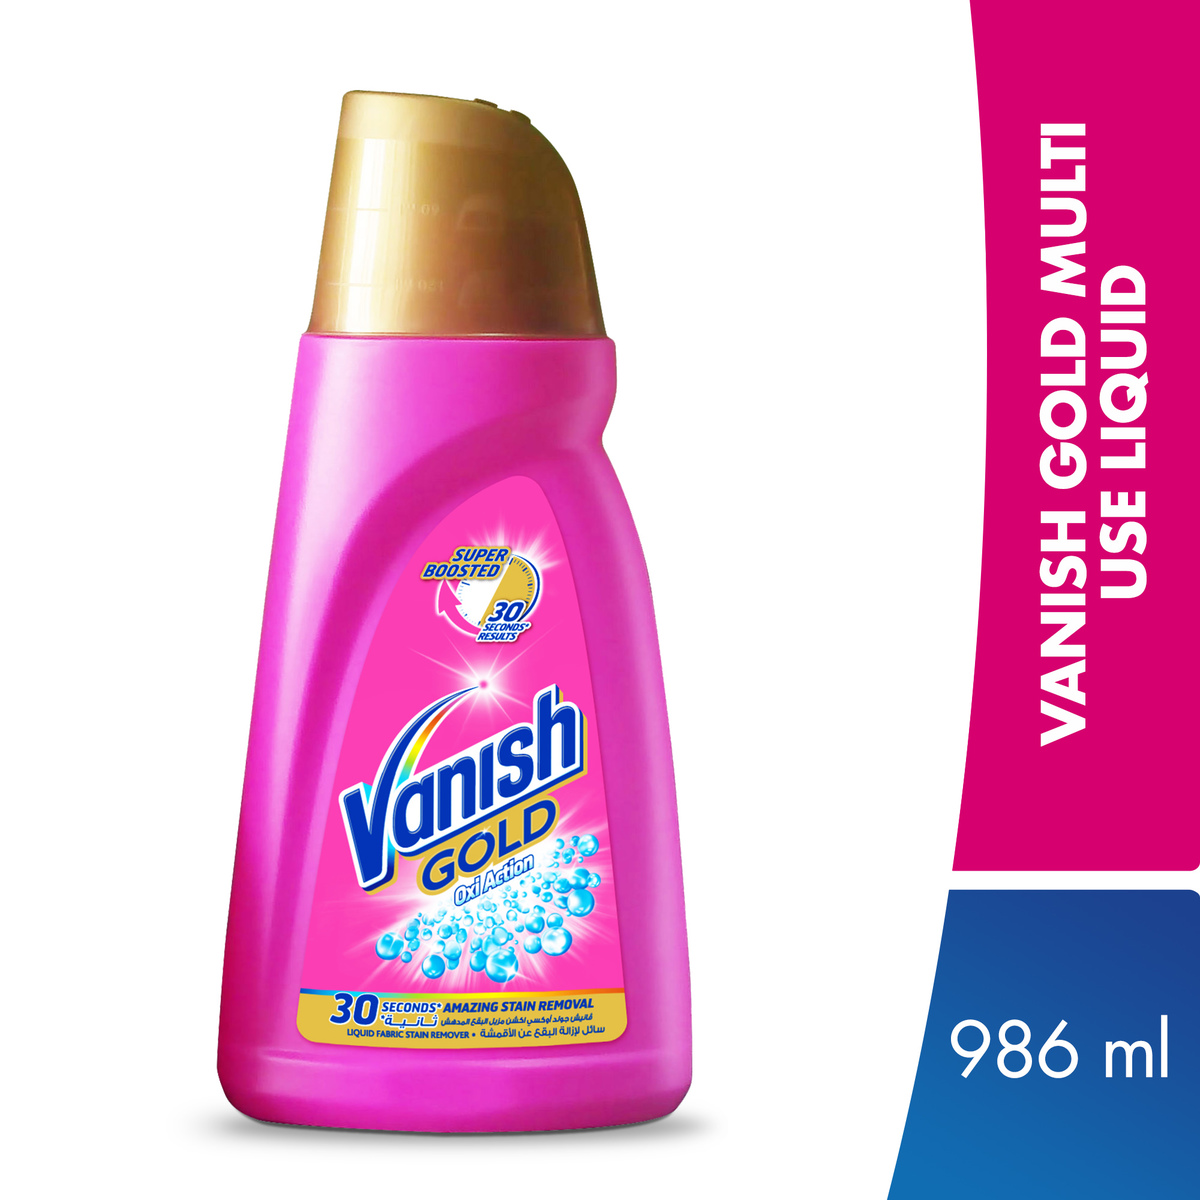 Vanish Stain Remover Multi Use Liquid Gold 986ml